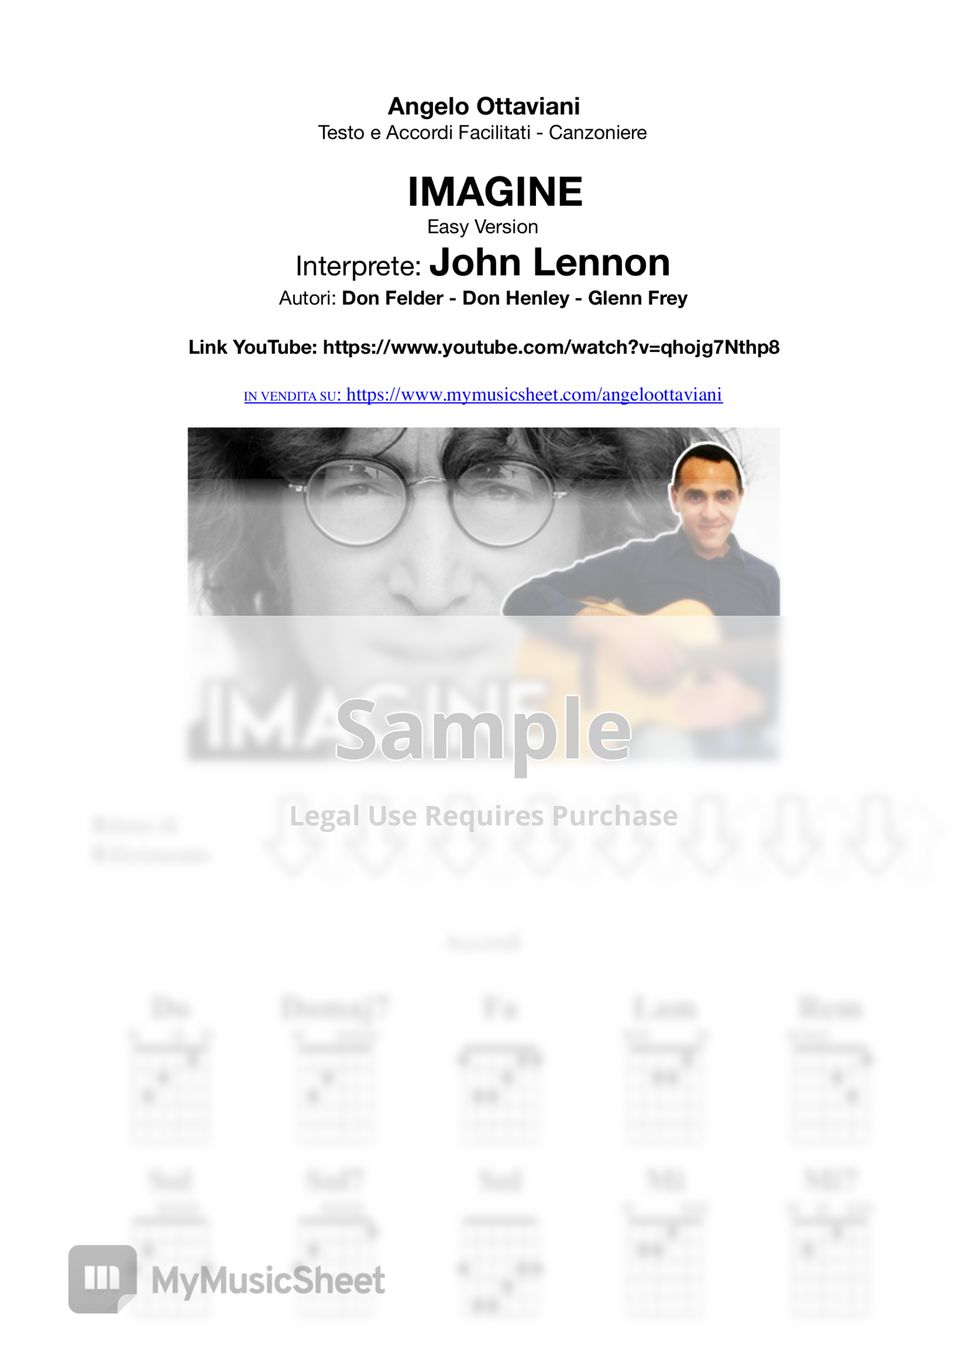 John Lennon - Imagine by Guitar